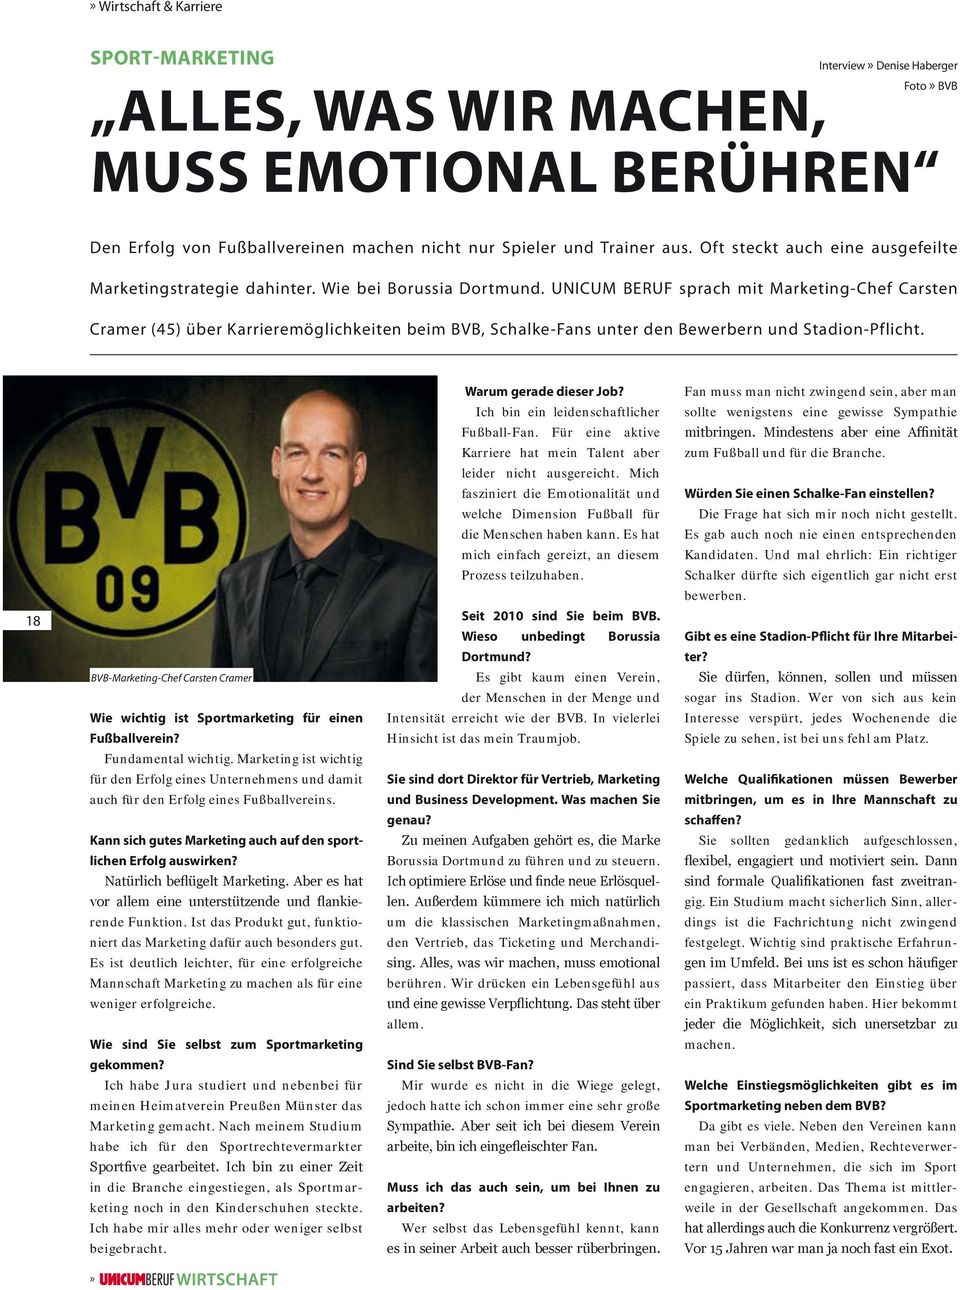 UNICUM BERUF sprach mit Marketing-Chef Carsten Cramer (45) über Karrieremöglichkeiten beim BVB, Schalke-Fans unter den Bewerbern und Stadion-Pflicht.